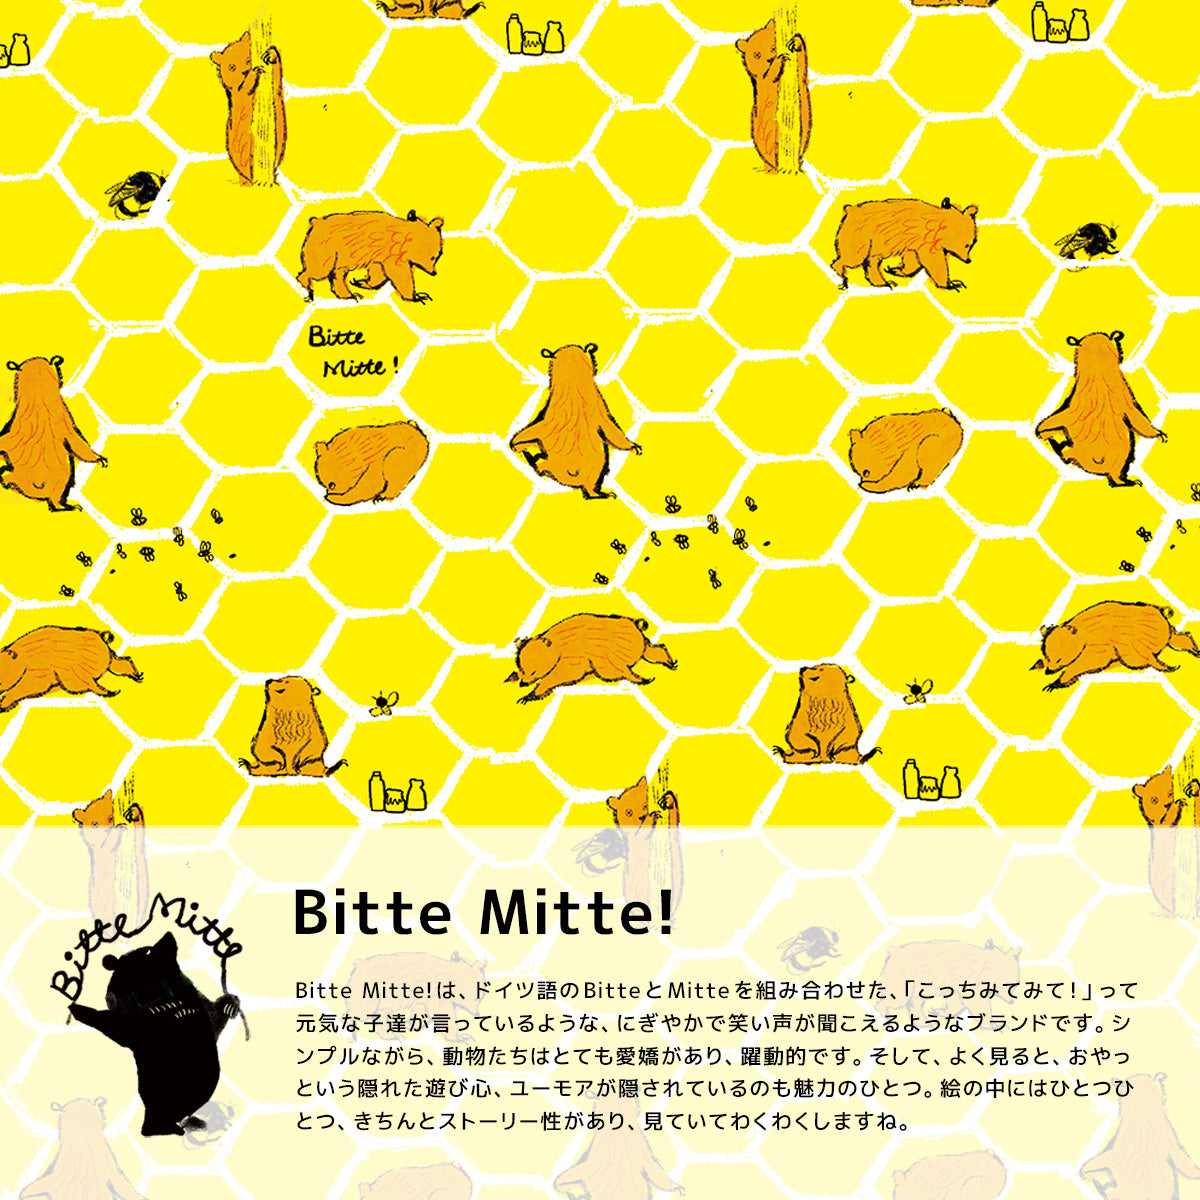 ももろデザイン、Bitte Mitte!のアートポスター